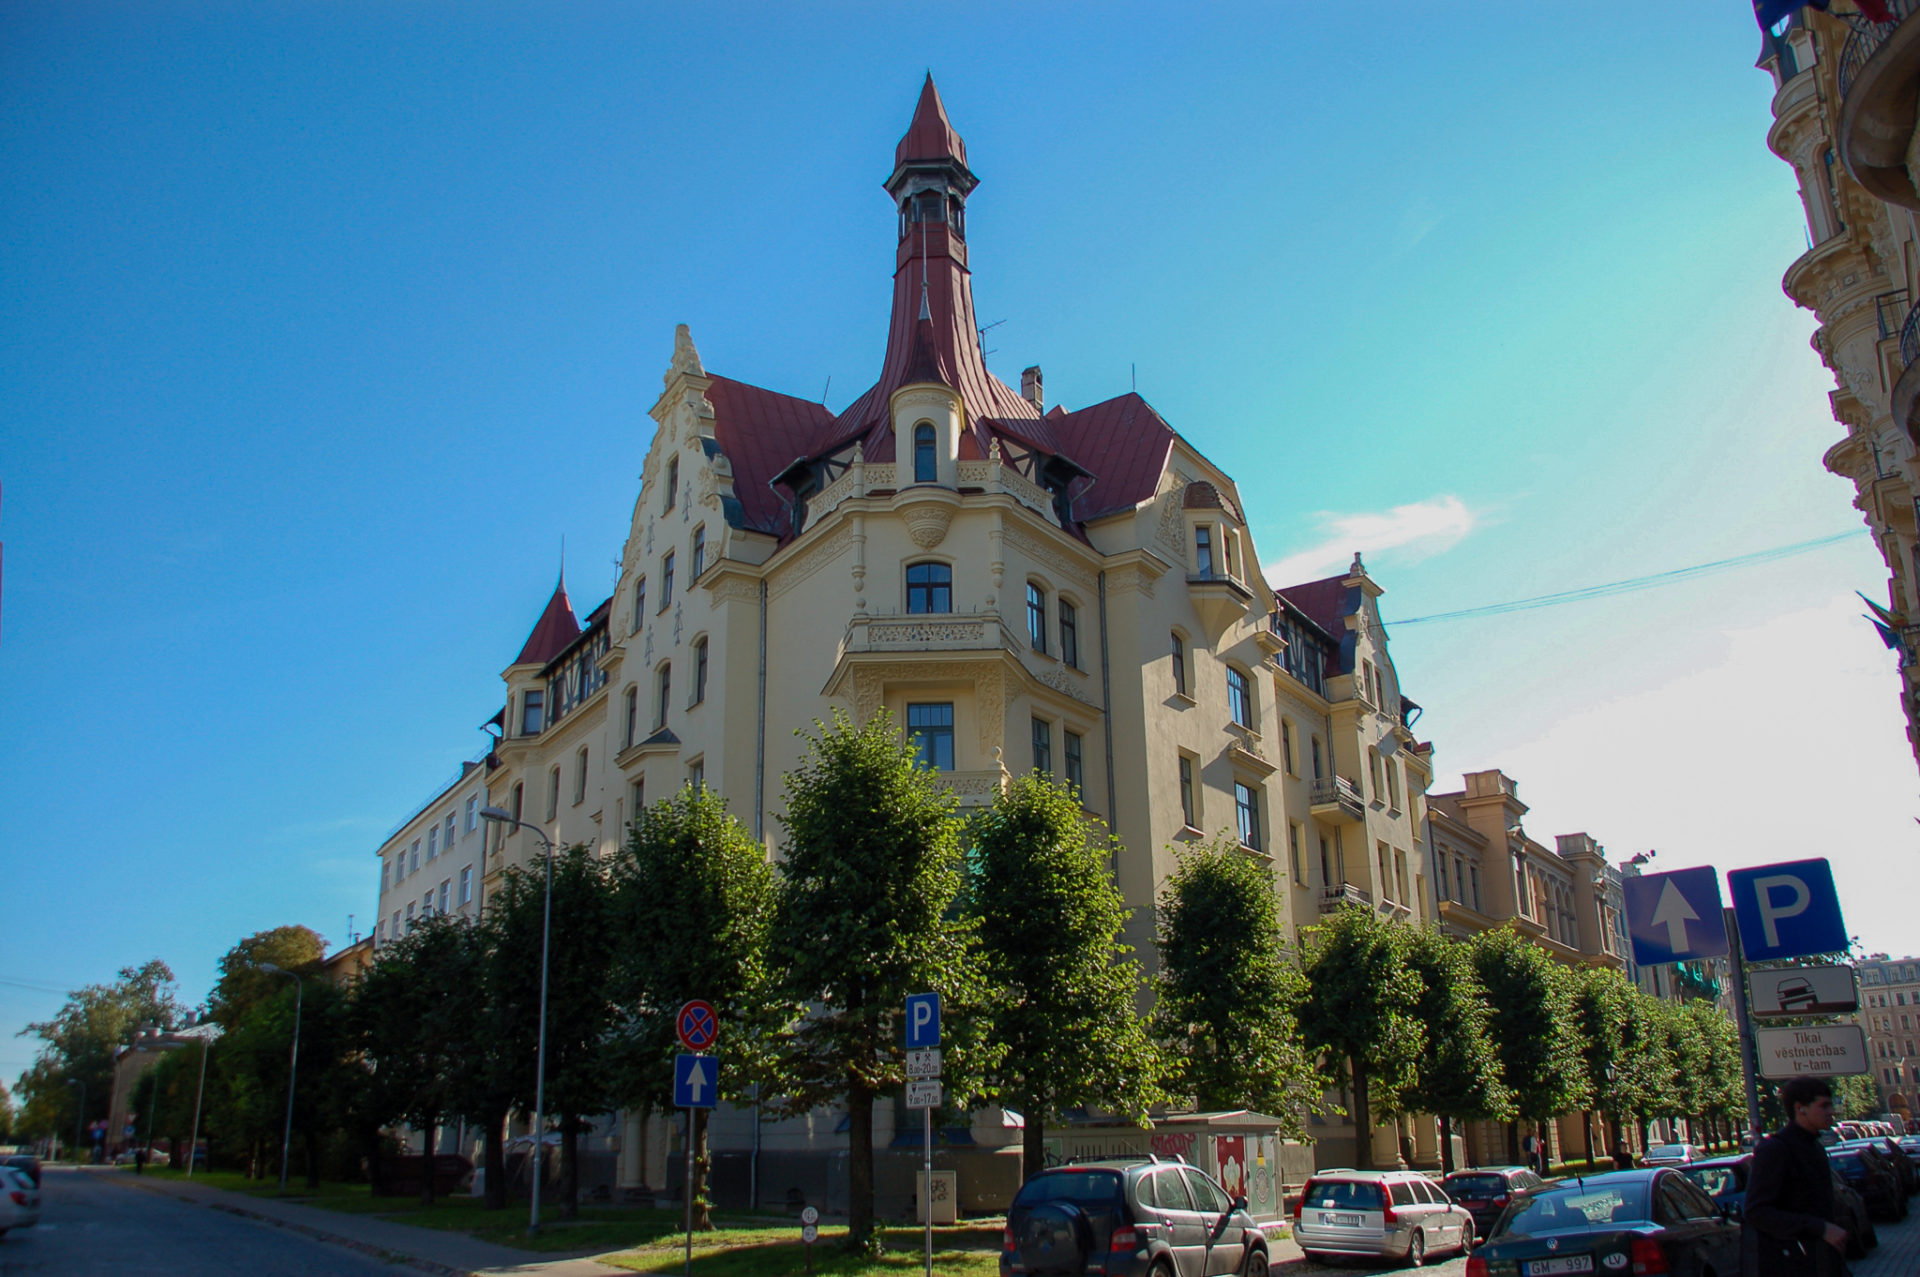 Jugendstilpalast in Riga mit Turm